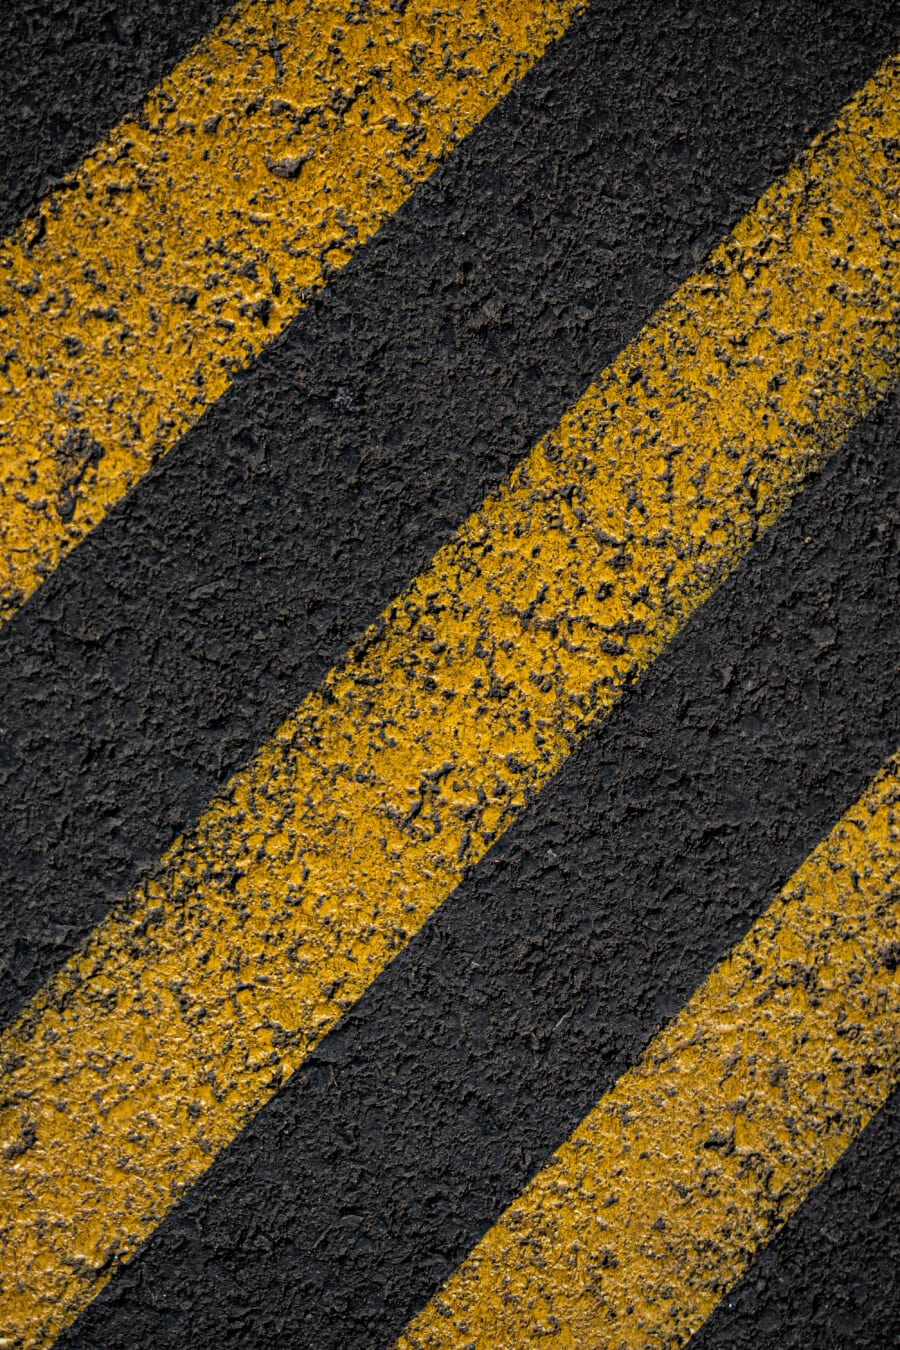 asfalt, tekstura, beton, žuta, pruge, linije, narančasto žuta, cesta, ulica, kolnik